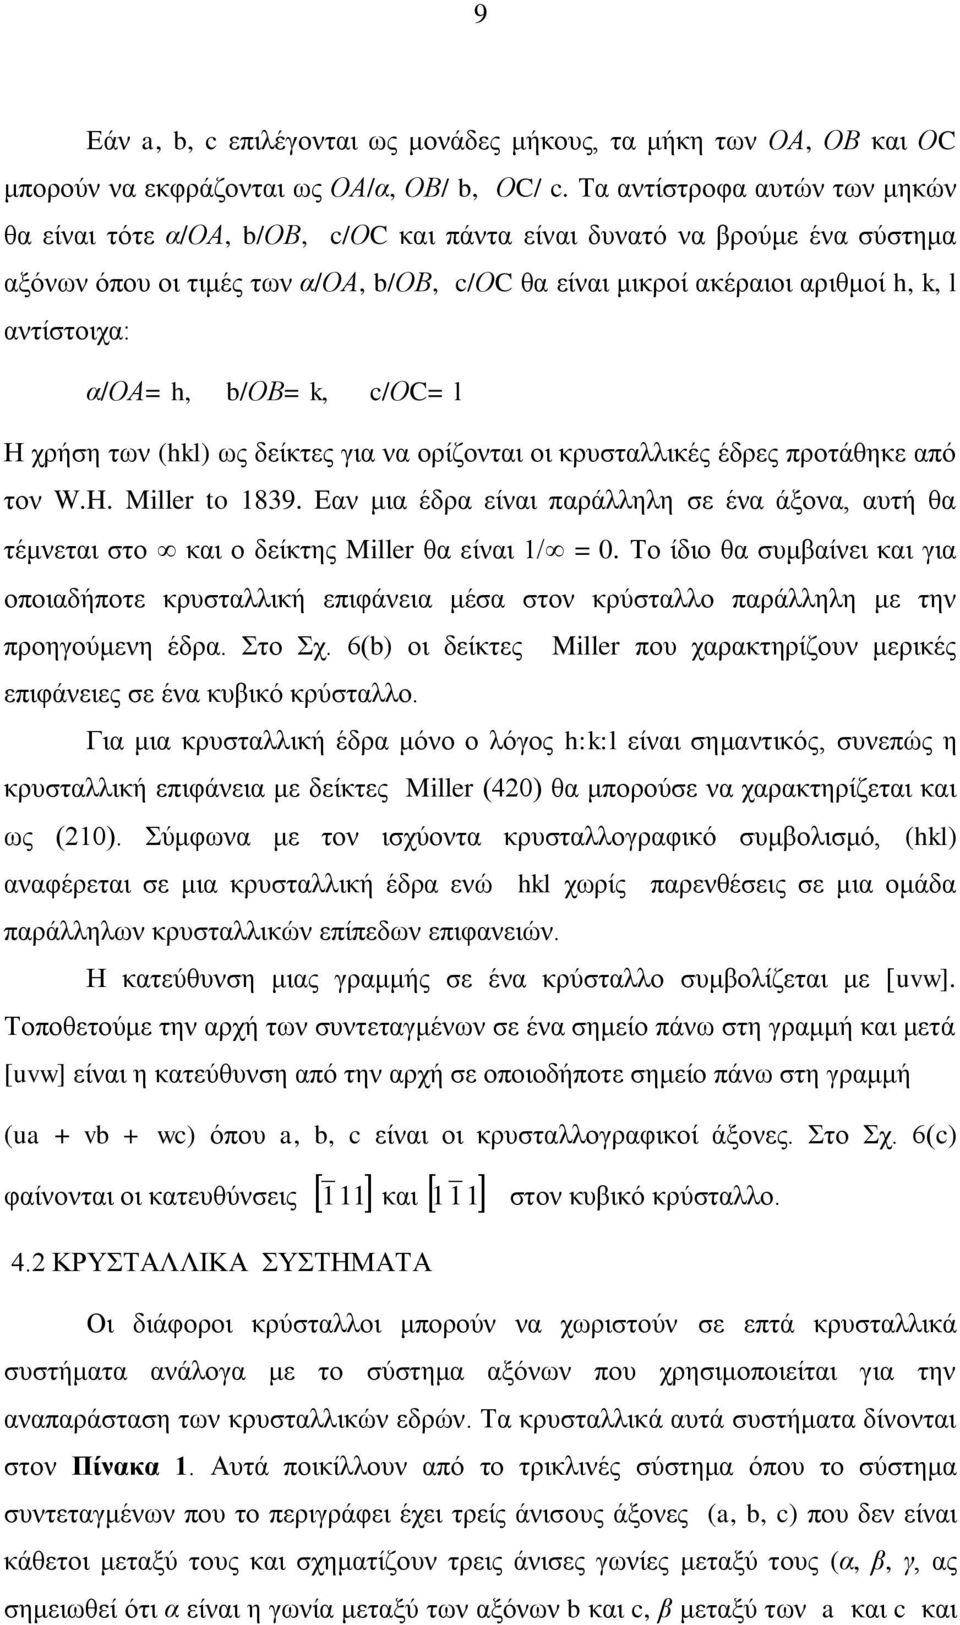 αληίζηνηρα: α/οα= h, b/οβ= k, c/οc= l Η ρξήζε ησλ (hkl) σο δείθηεο γηα λα νξίδνληαη νη θξπζηαιιηθέο έδξεο πξνηάζεθε από ηνλ W.H. Miller to 1839.